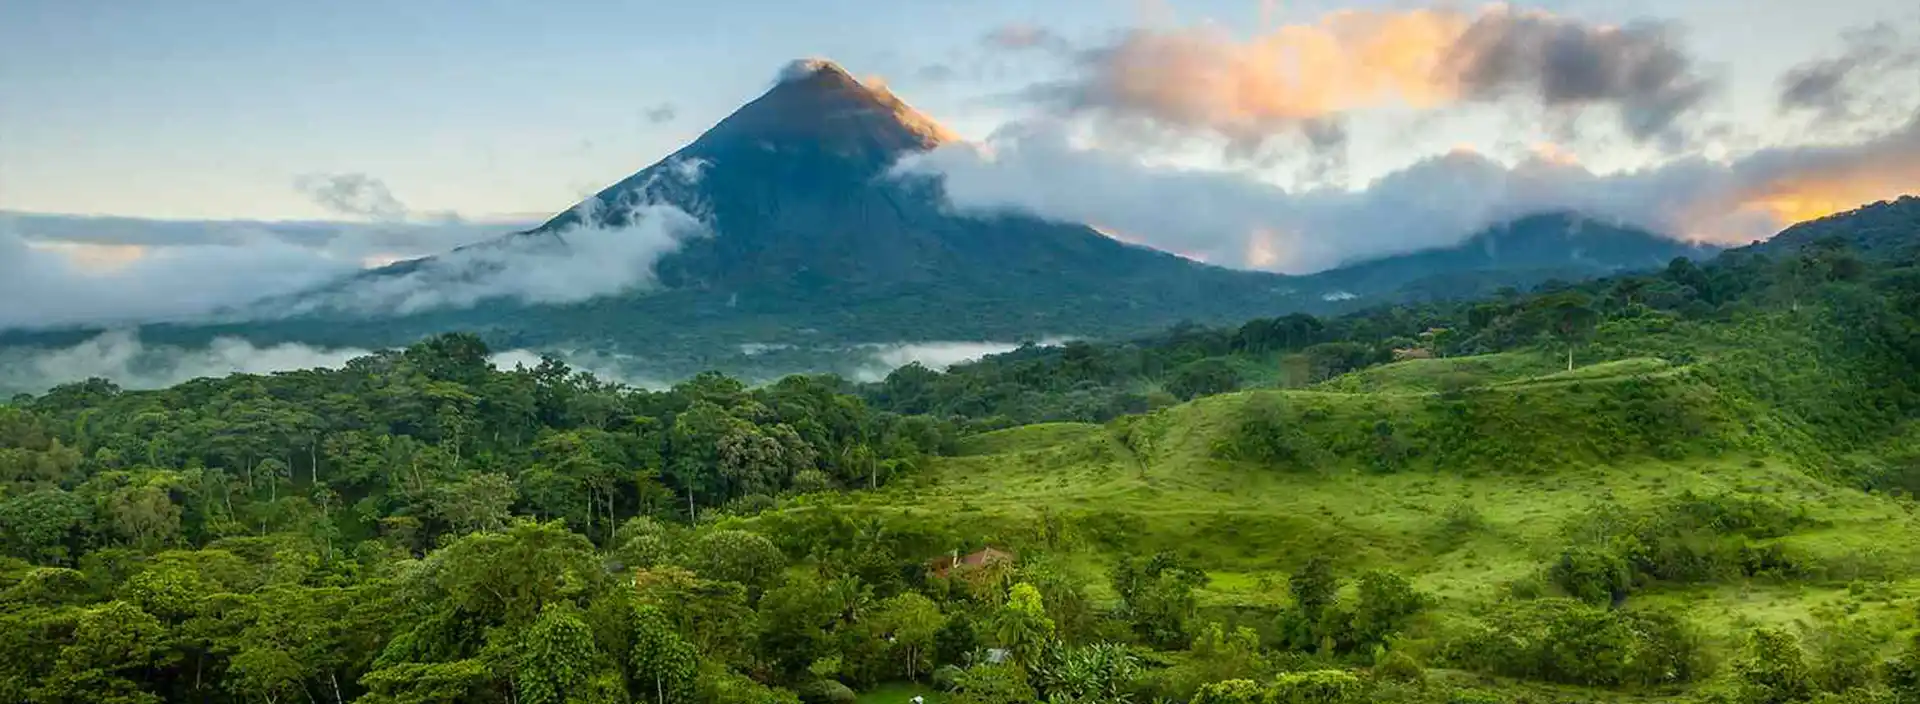 سفر به کاستاریکا بدون ویزا